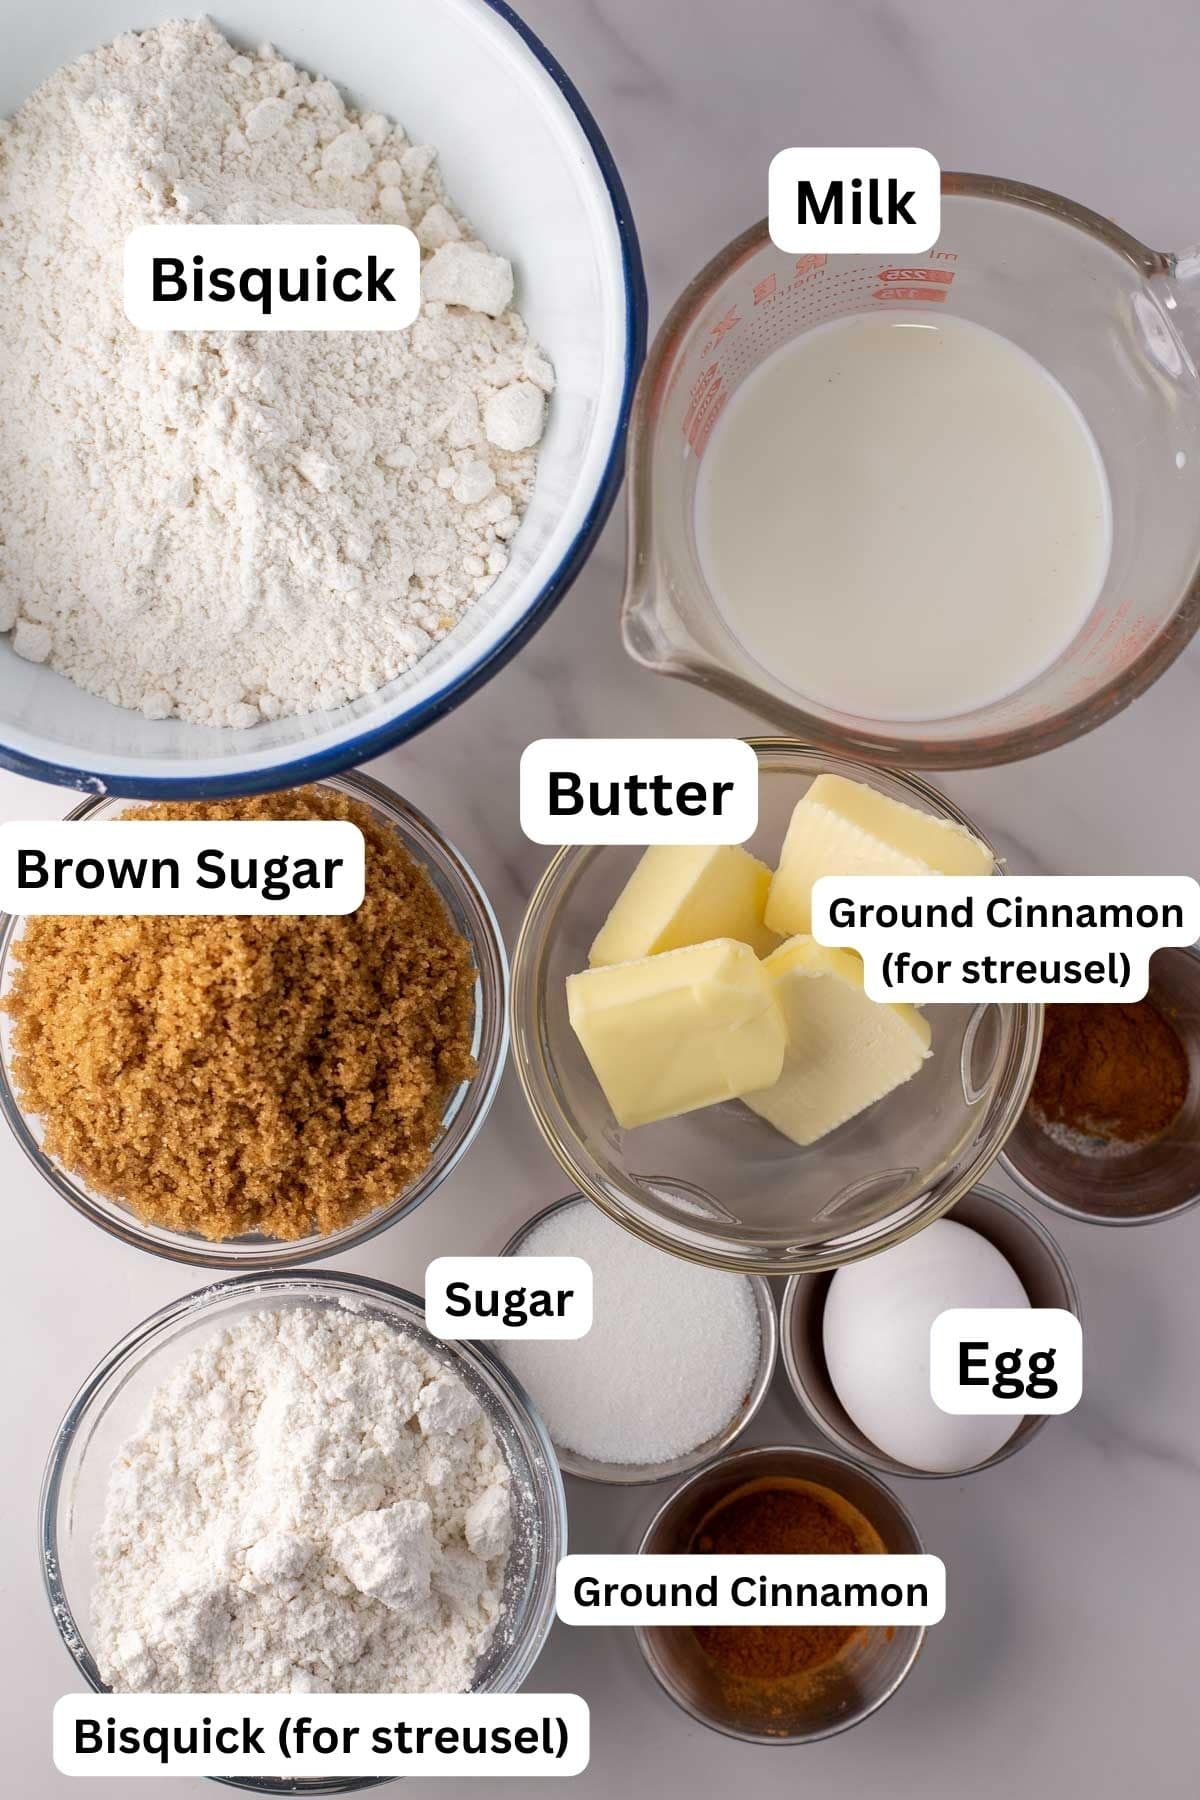 Ingredienti della ricetta della torta al caffè Bisquick misurati ed etichettati.